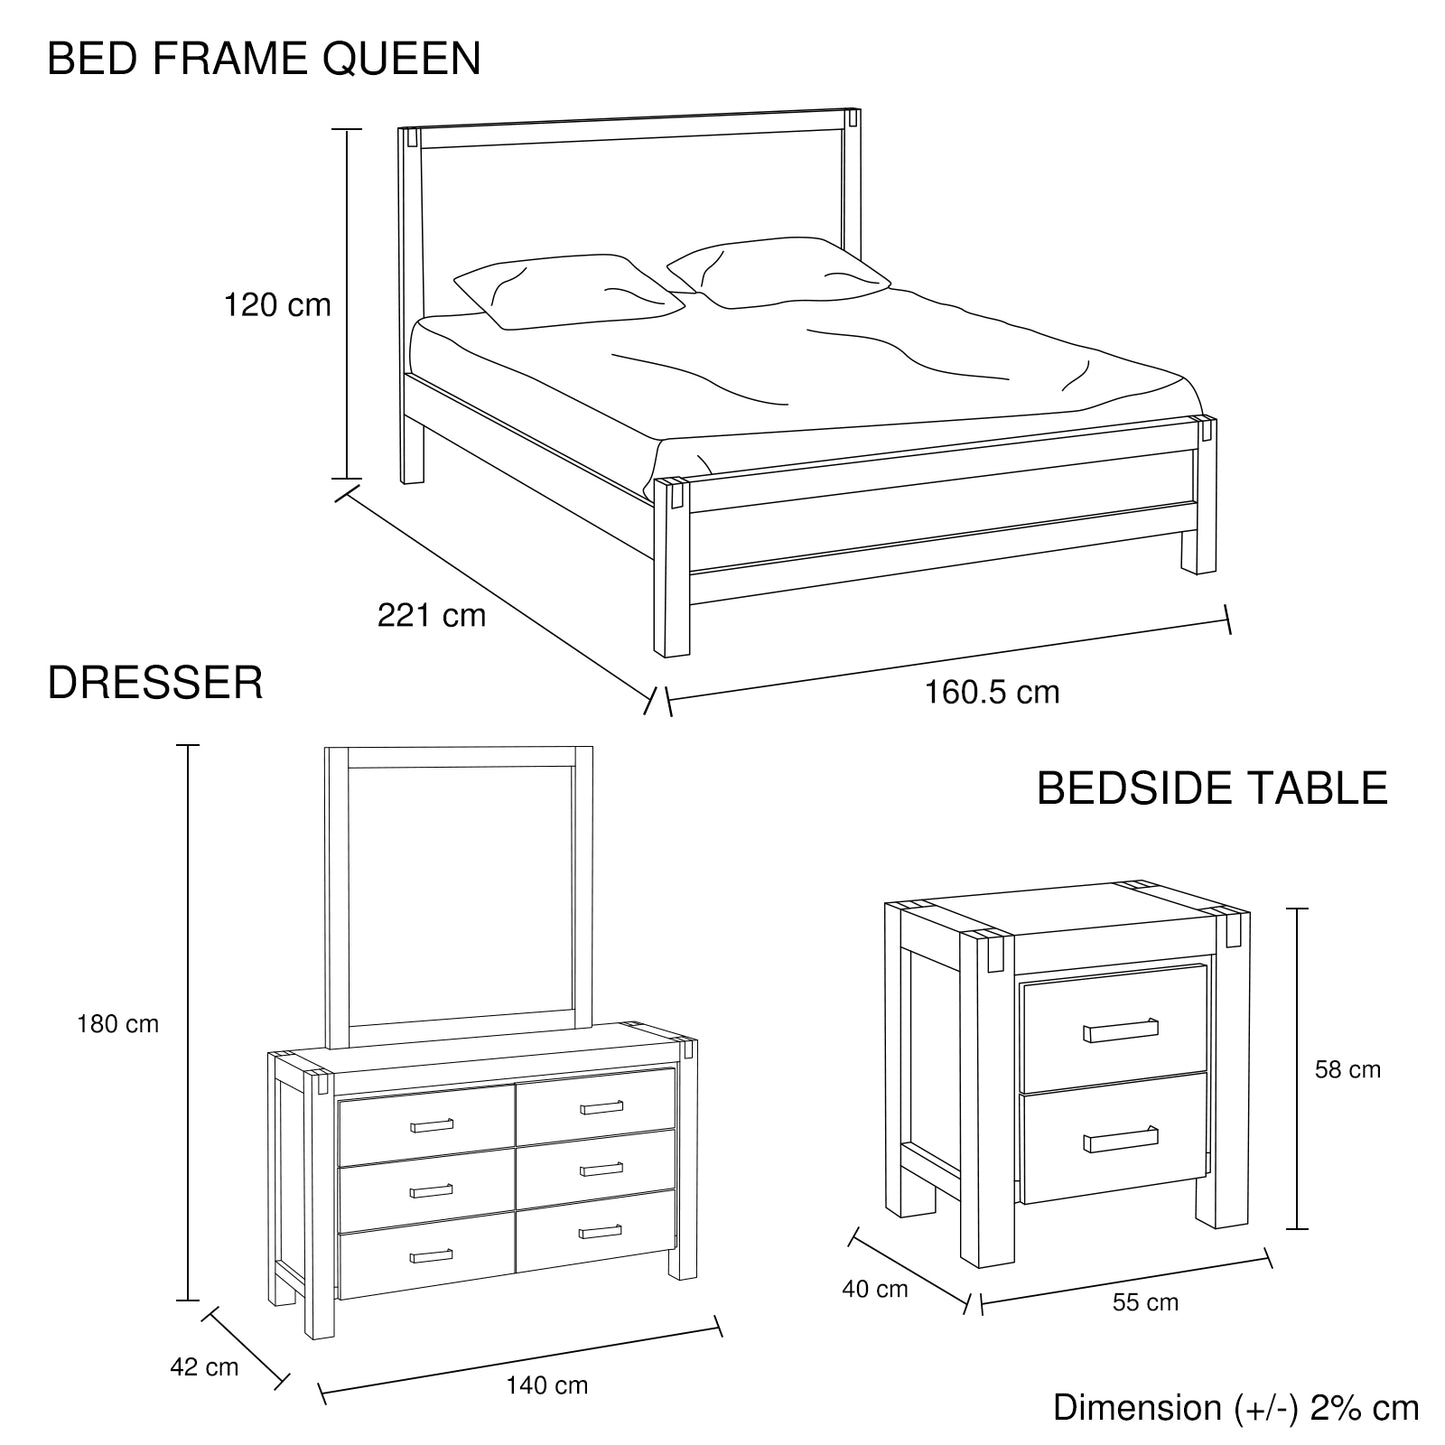 4 Piece Queen Bedroom Suite -  Oak